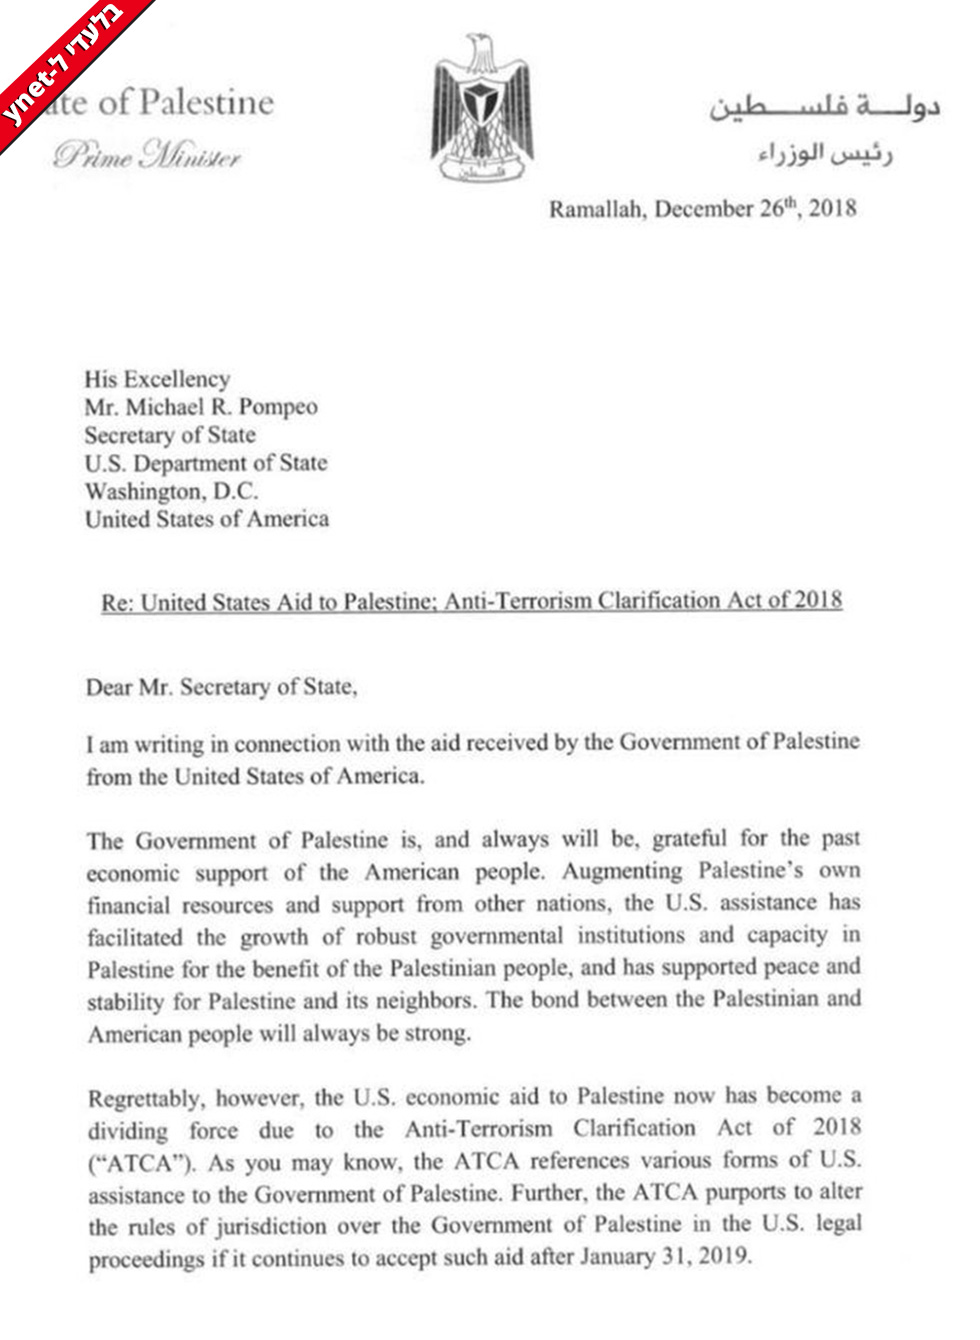 מכתב של ראמי חמדאללה למייק פומפיאו בו הוא מושיע לו הפסקת קבלת הסיוע מארה